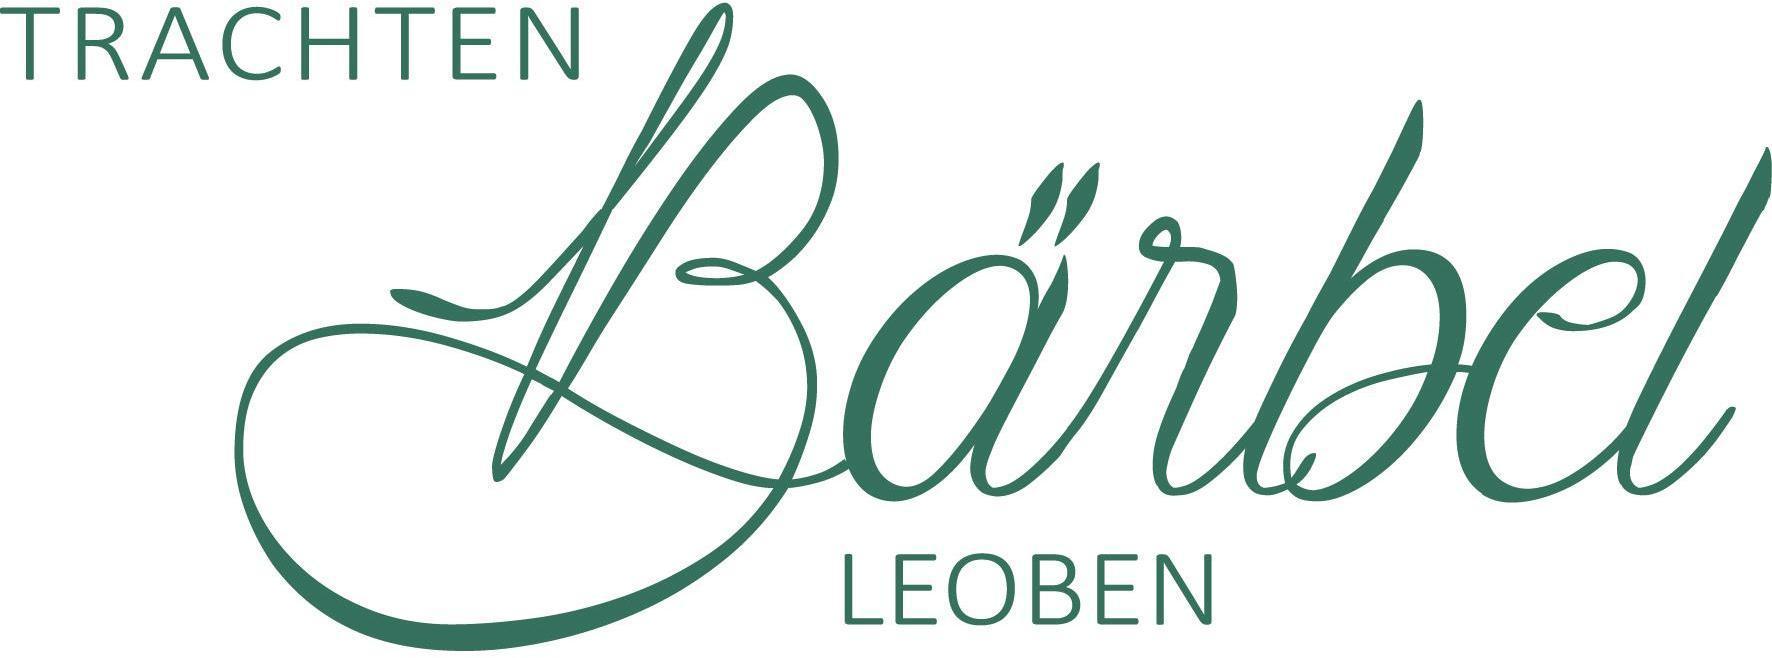 Logo Trachten Bärbel